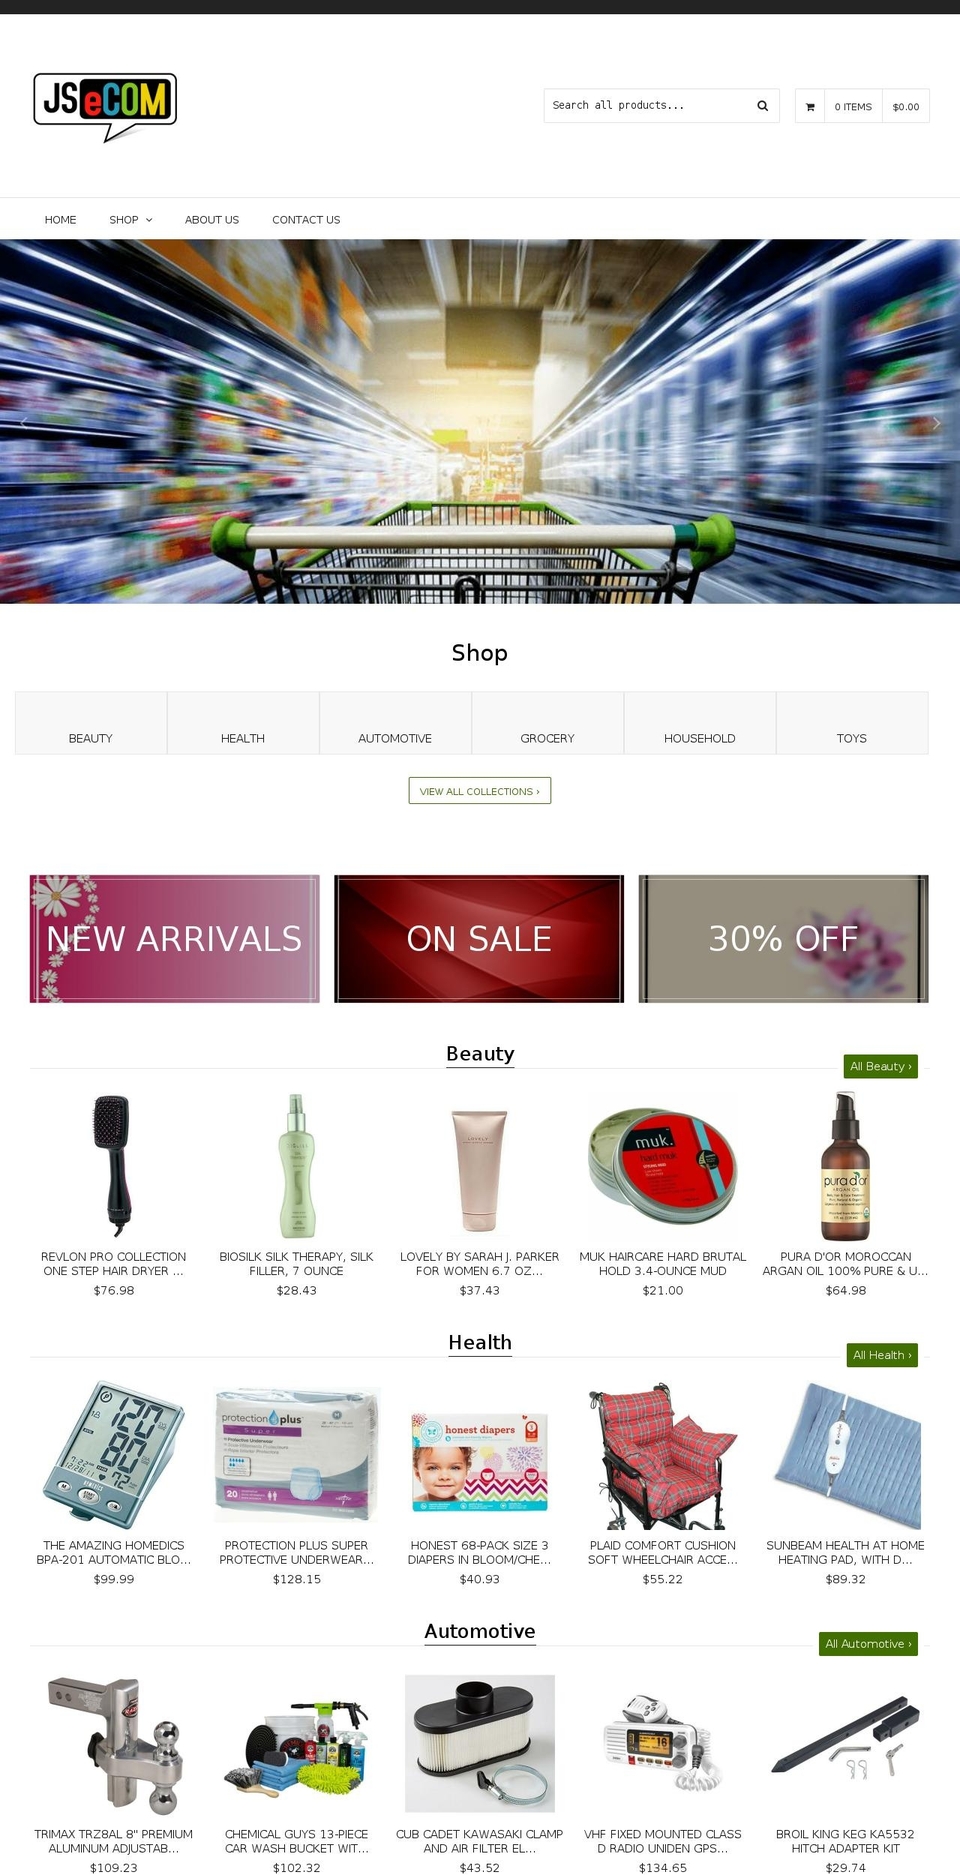 qrack Shopify theme site example jsonlinestore.com